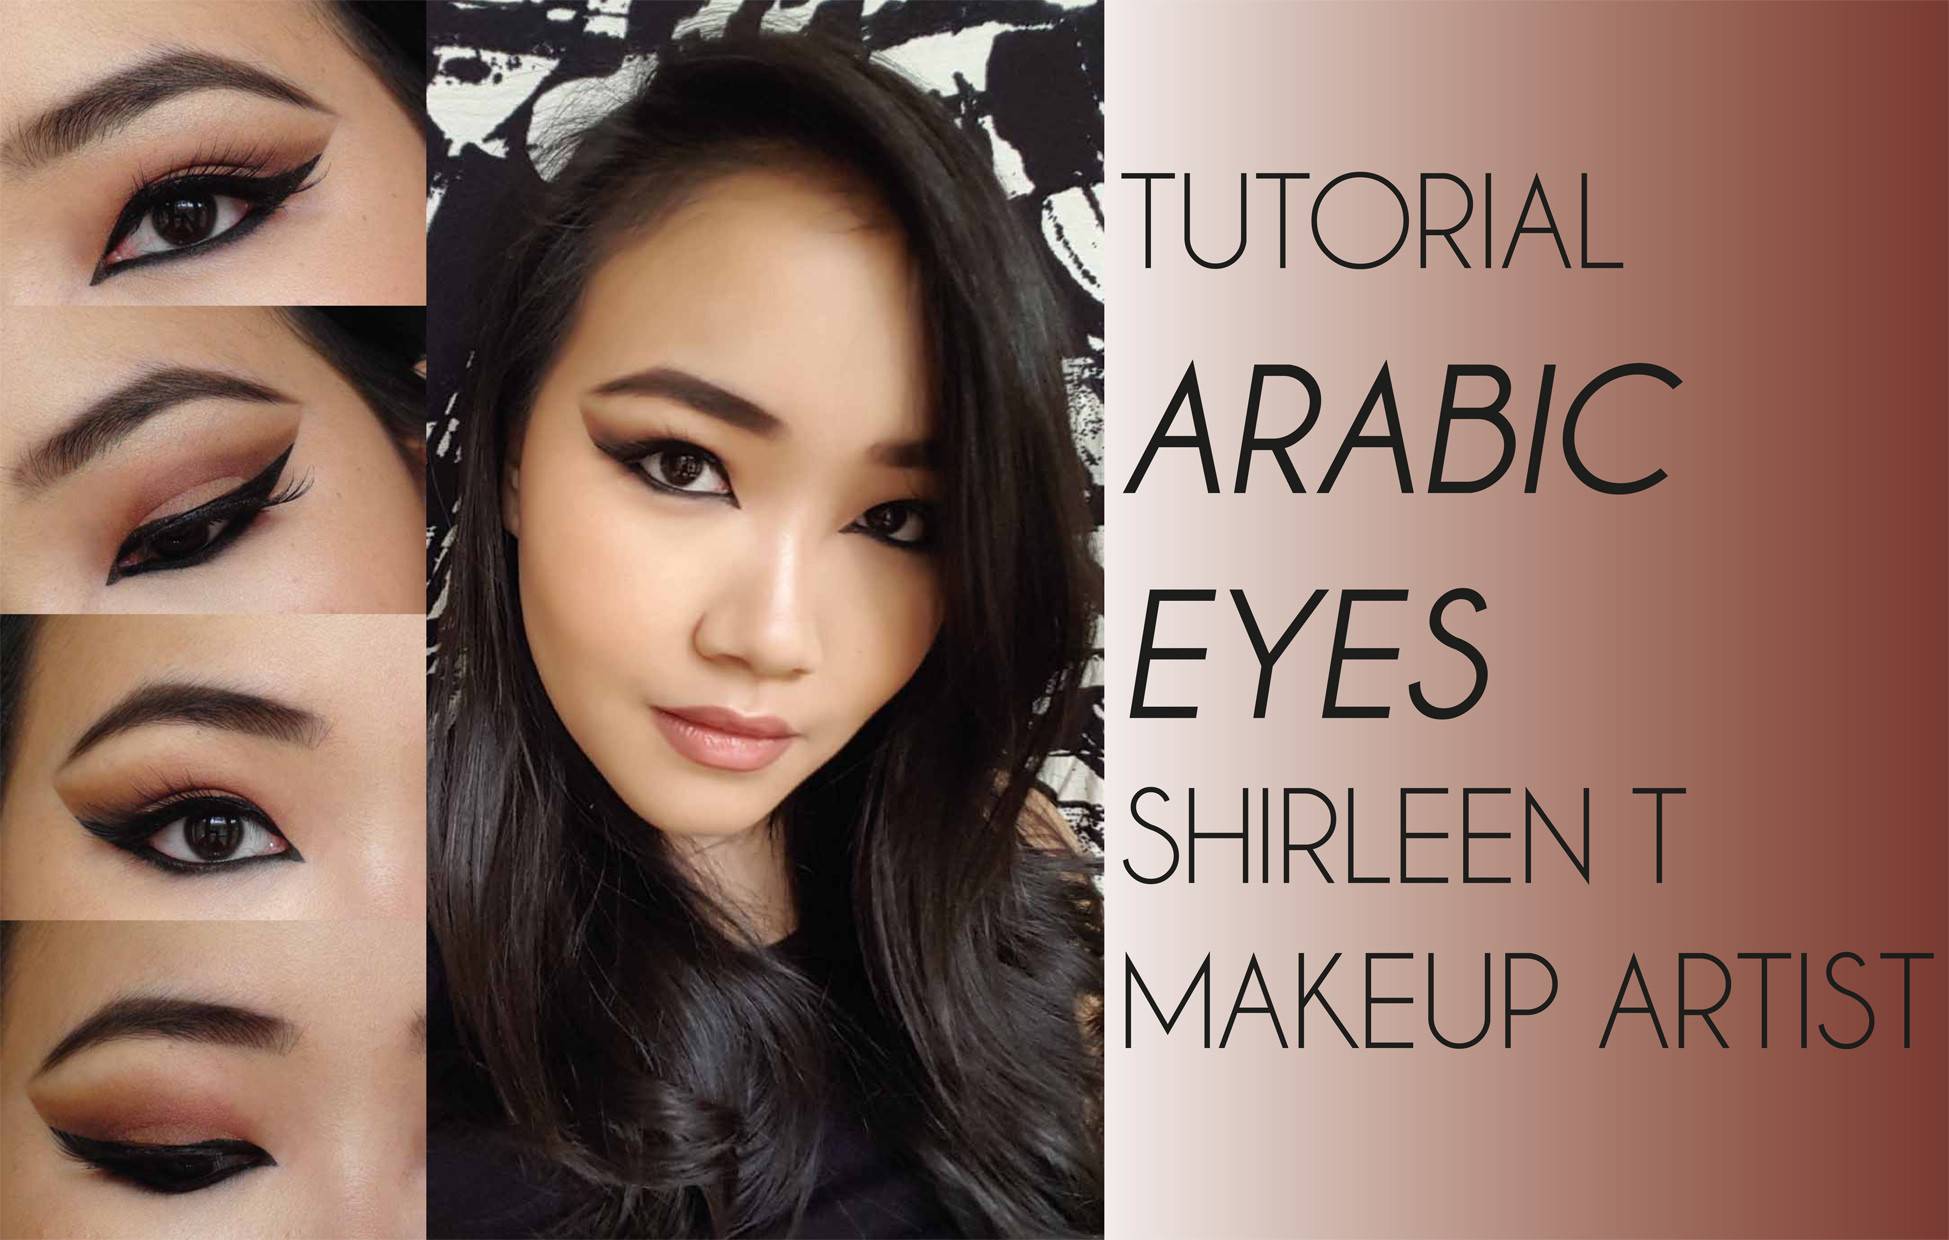 Arabic Eyes Shirleen T Makeup Artist